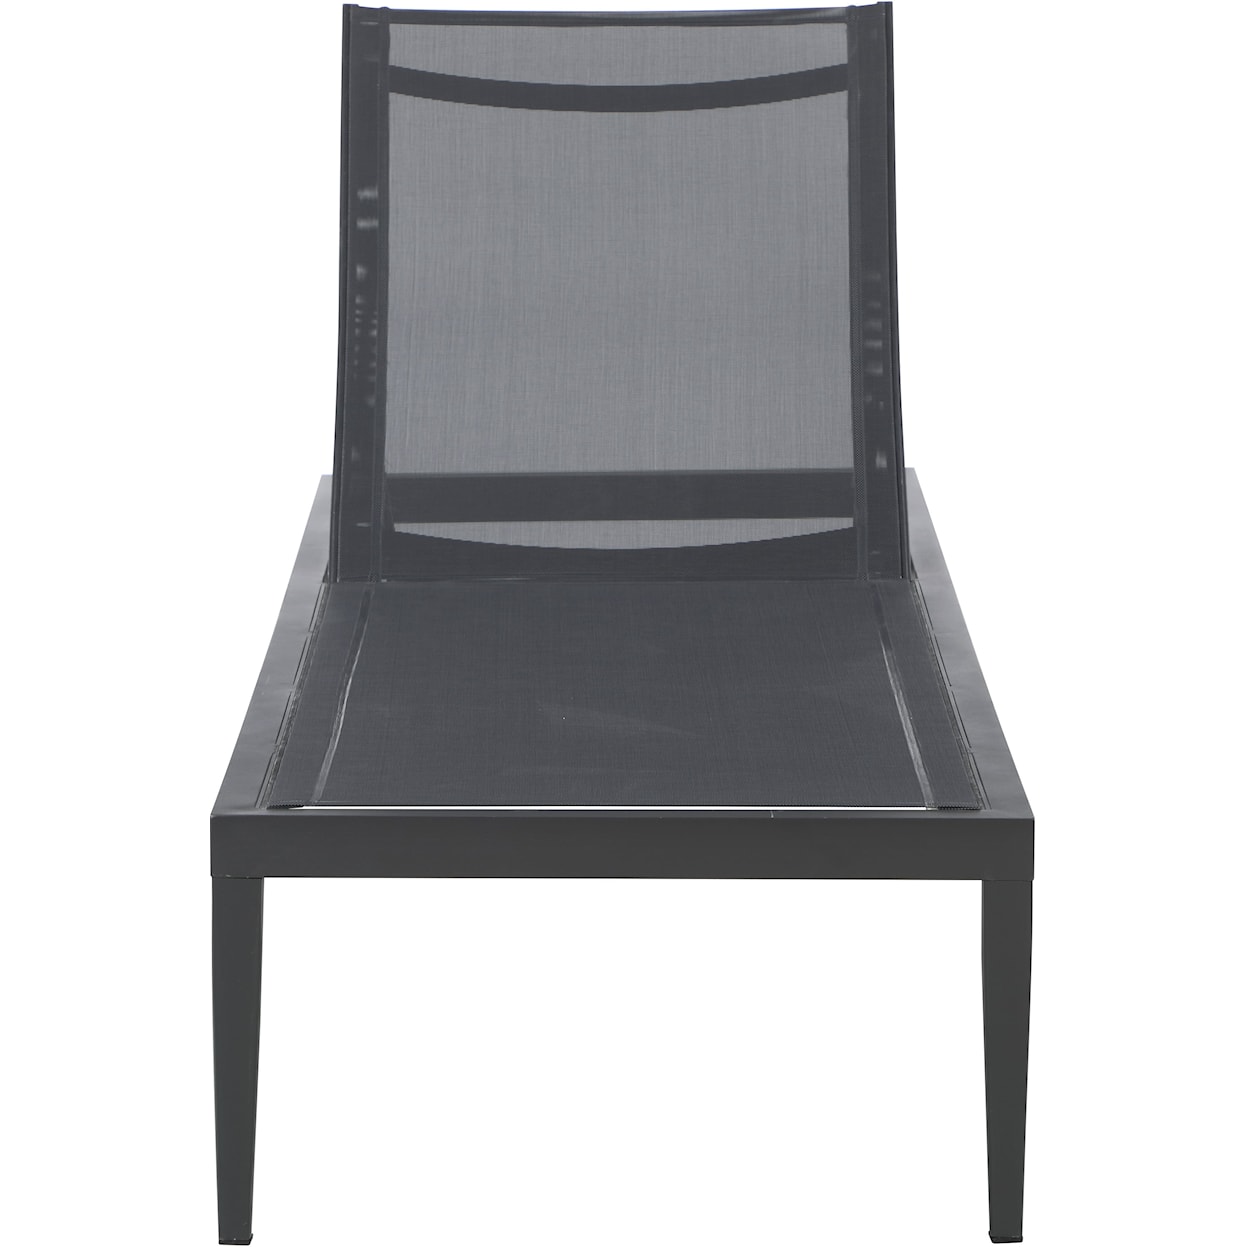 Meridian Furniture Nizuc Aluminum Mesh Chaise Lounge Chair